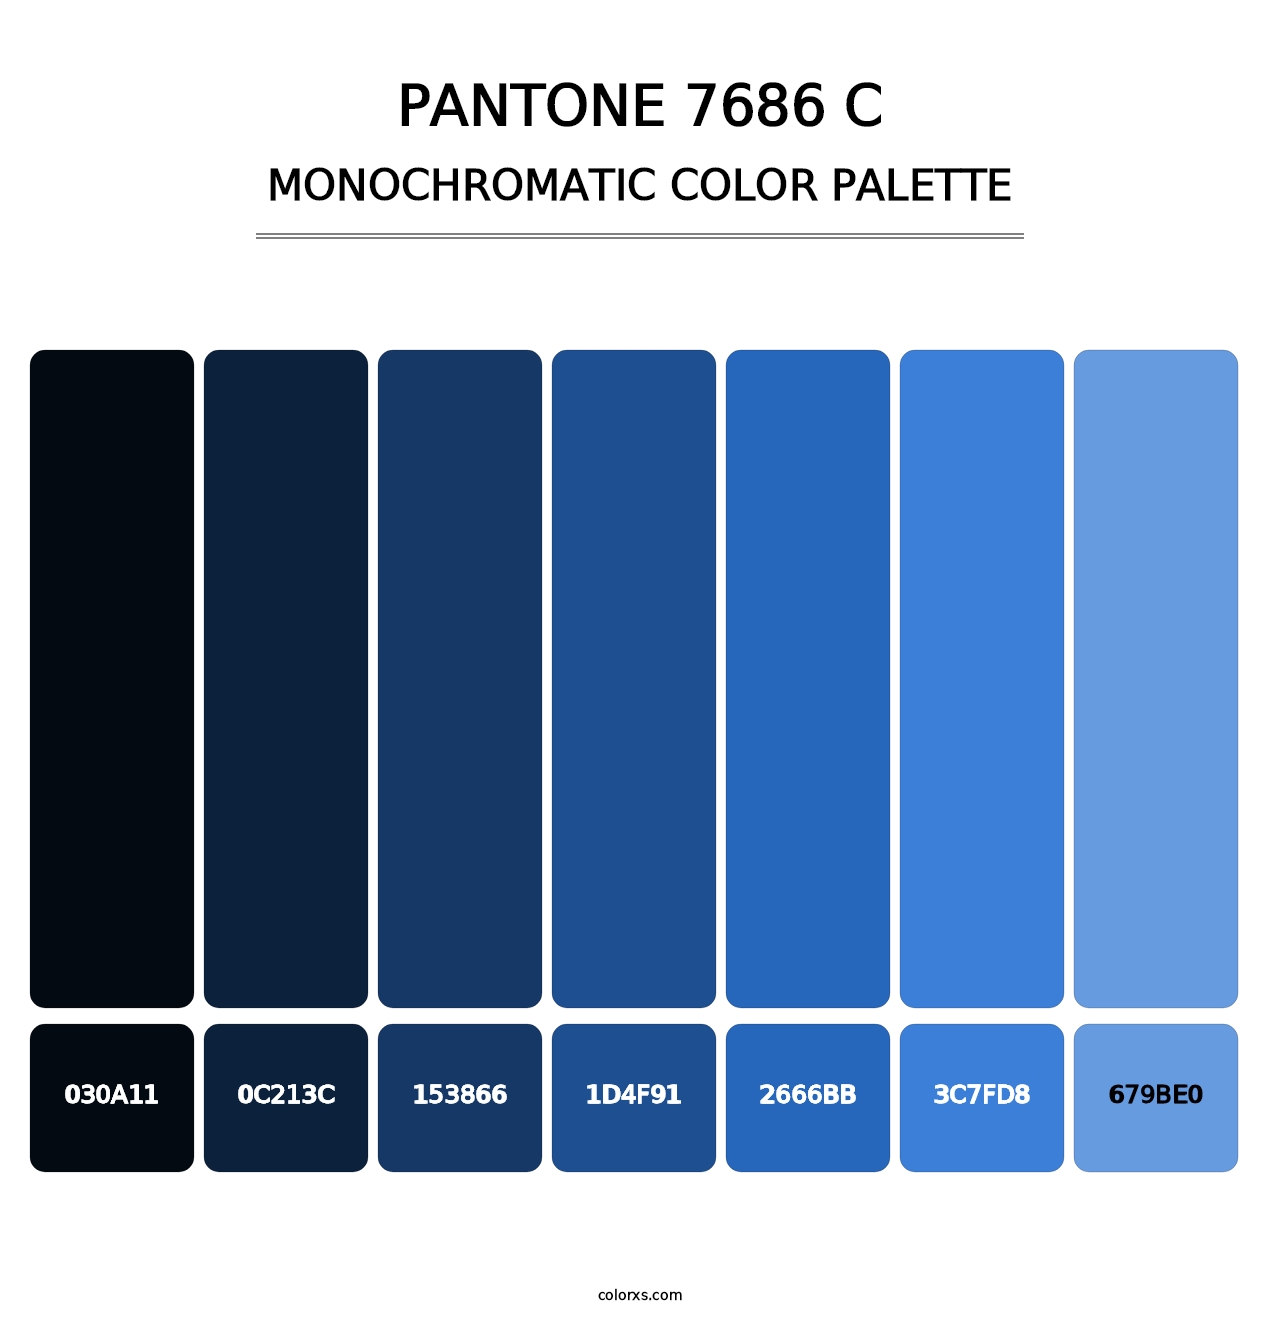 PANTONE 7686 C - Monochromatic Color Palette